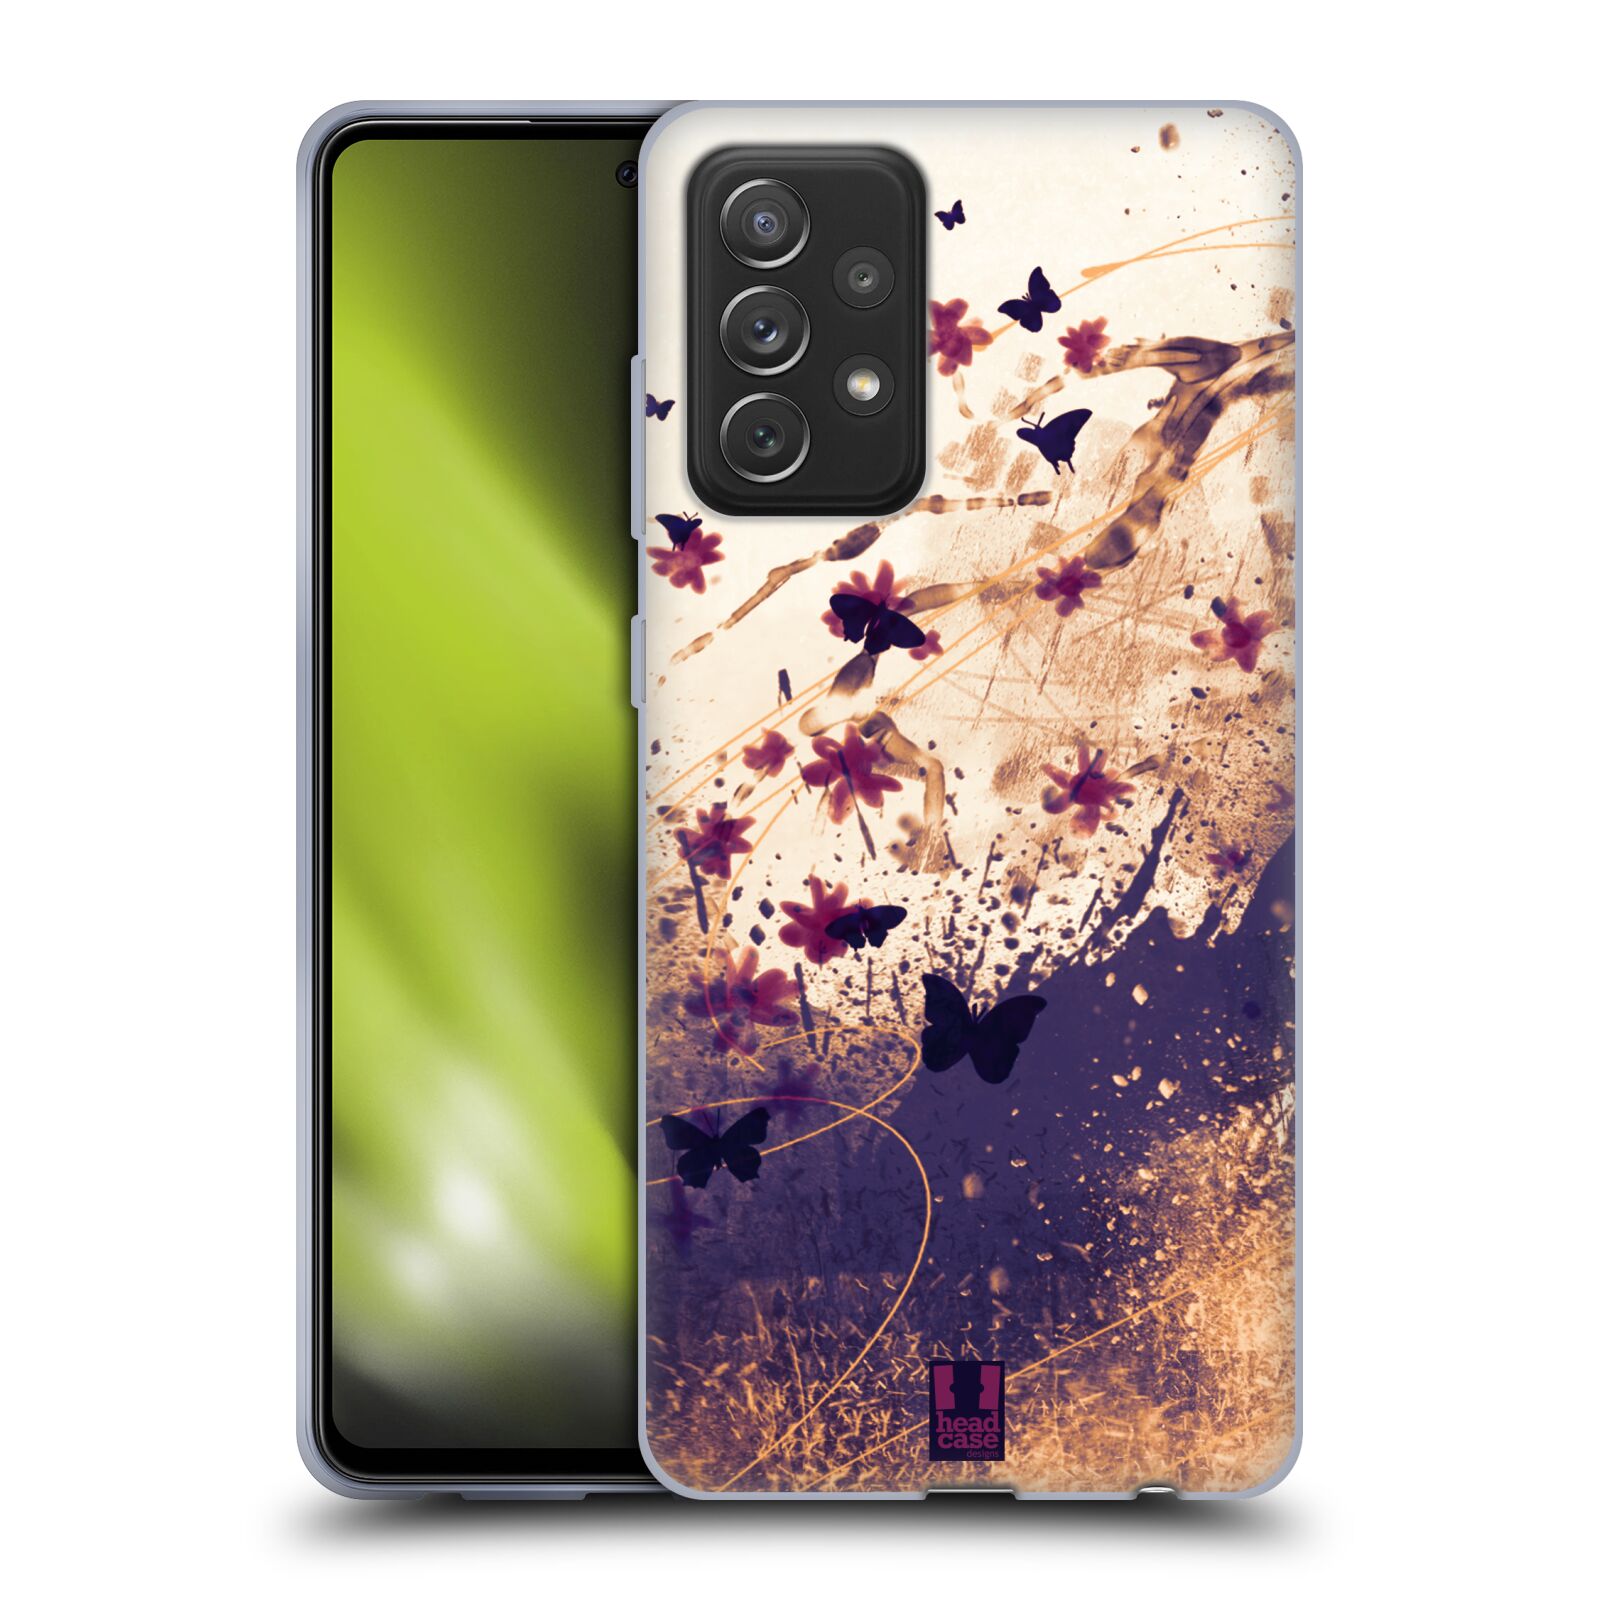 Plastový obal HEAD CASE na mobil Samsung Galaxy A72 / A72 5G vzor Kreslené barevné květiny KVĚTY A MOTÝLCI